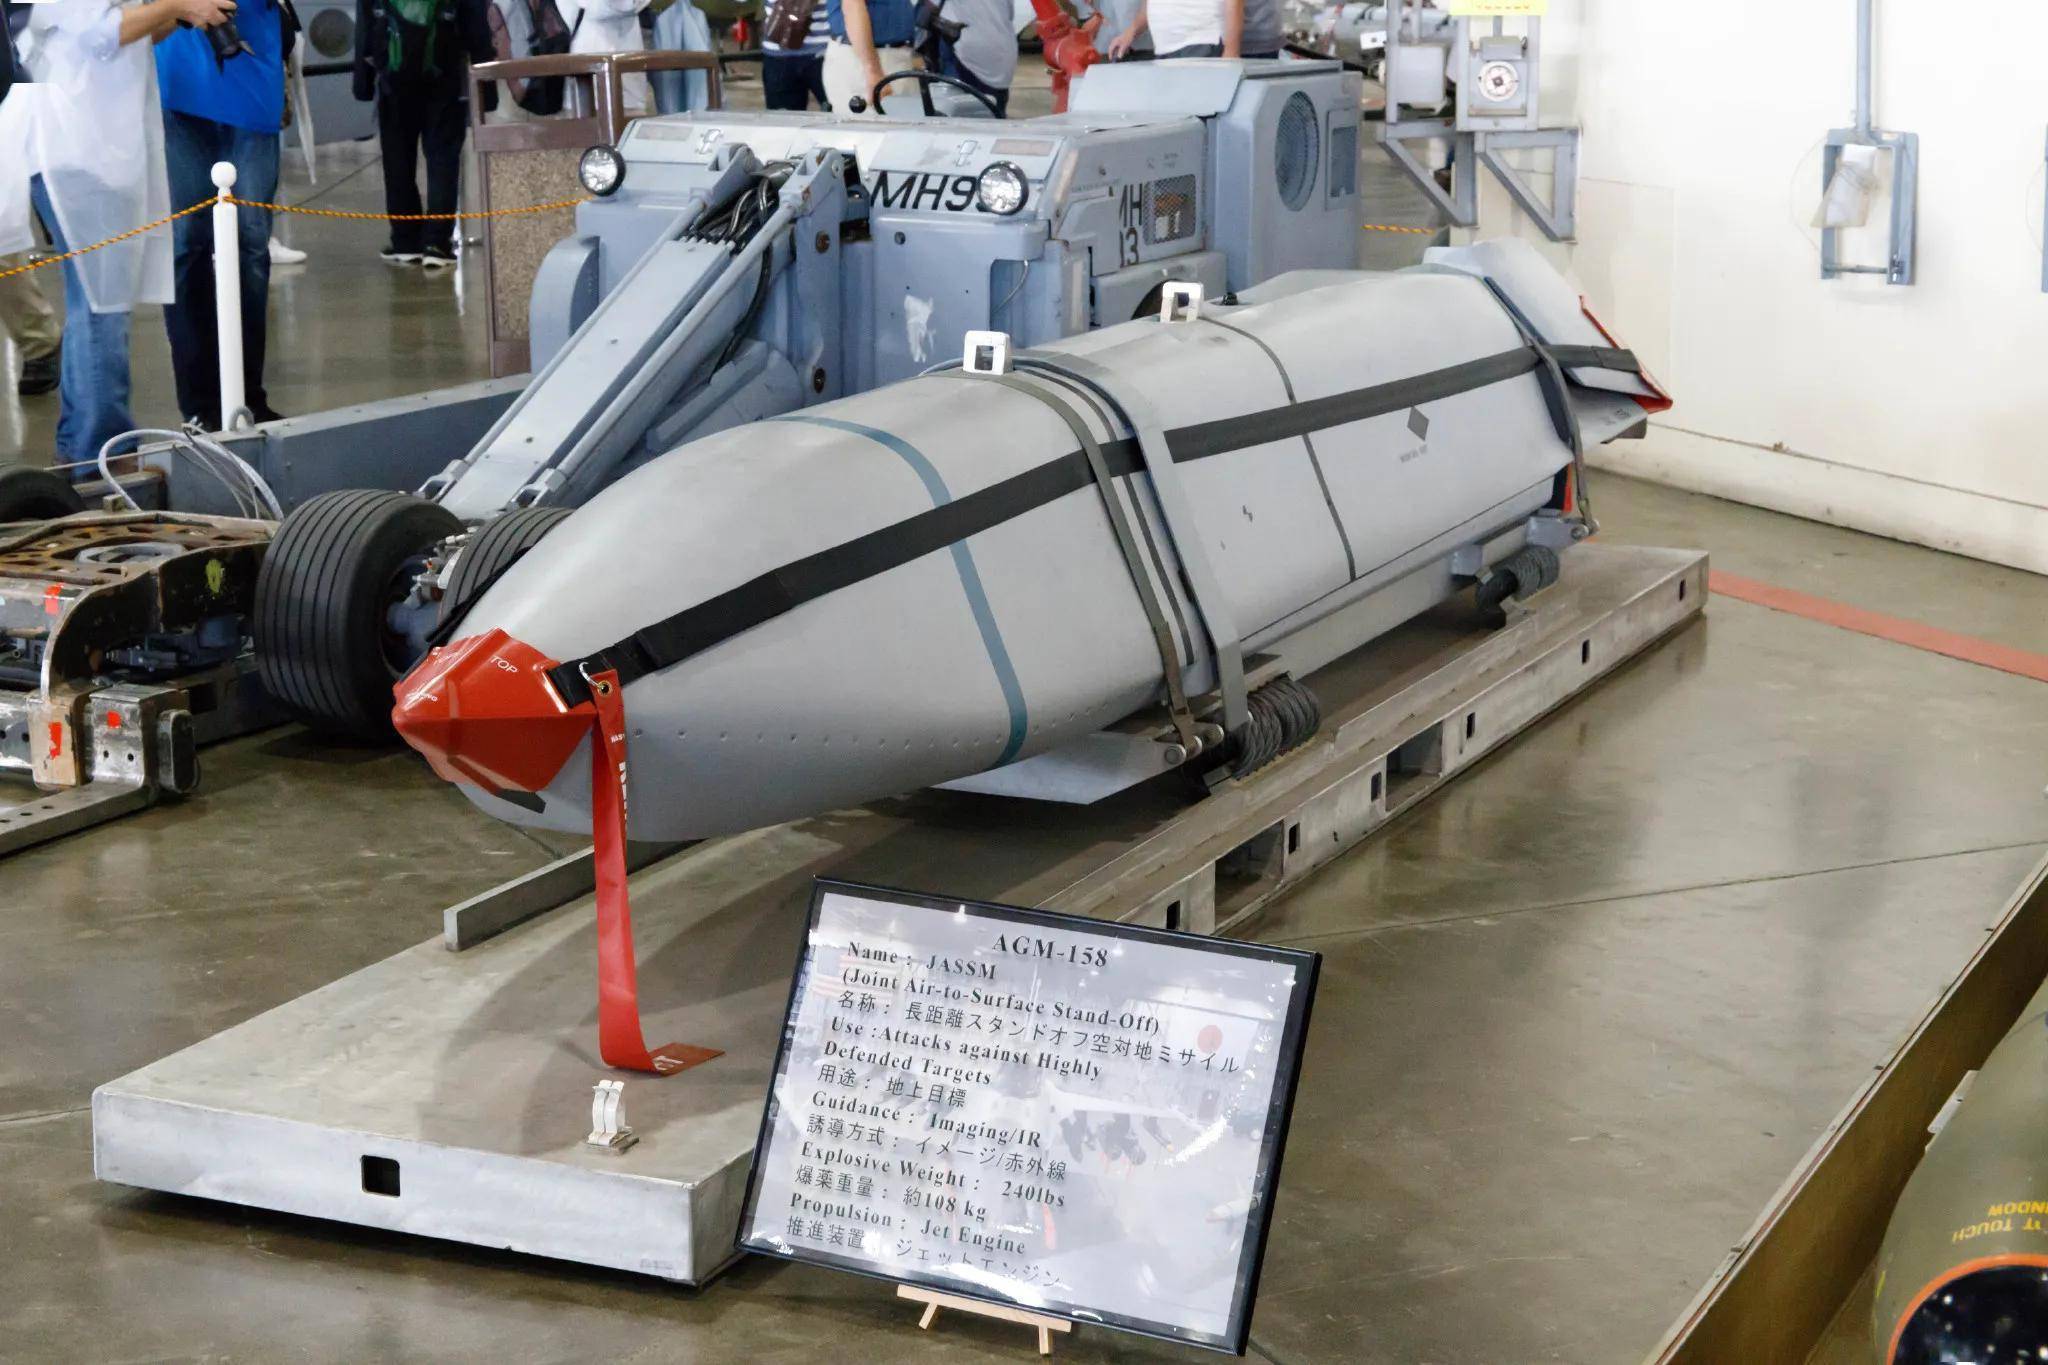 实际上就是美国新研制不久的agm158隐身型巡航导弹,jassm是通用的三军